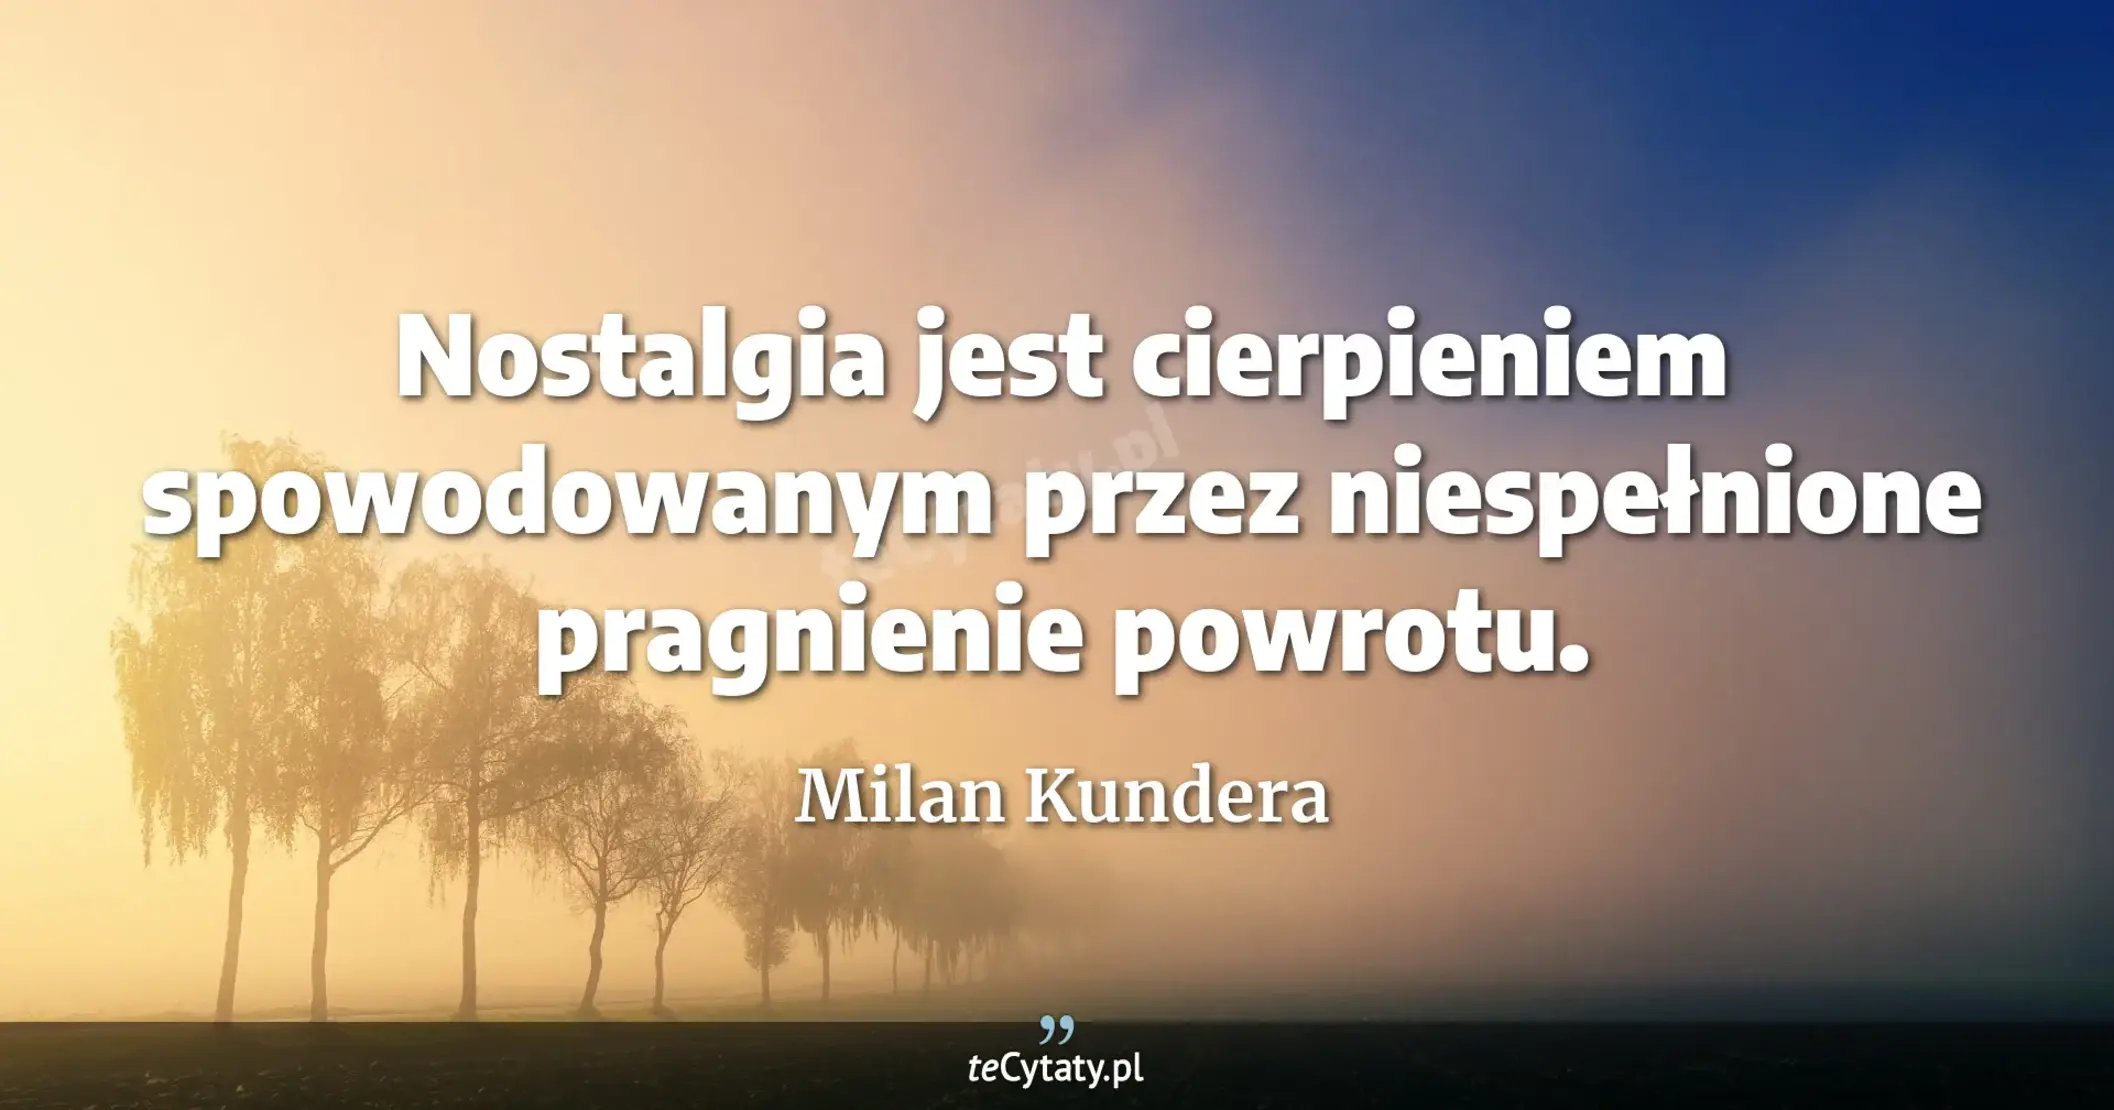 Nostalgia jest cierpieniem spowodowanym przez niespełnione pragnienie powrotu. - Milan Kundera